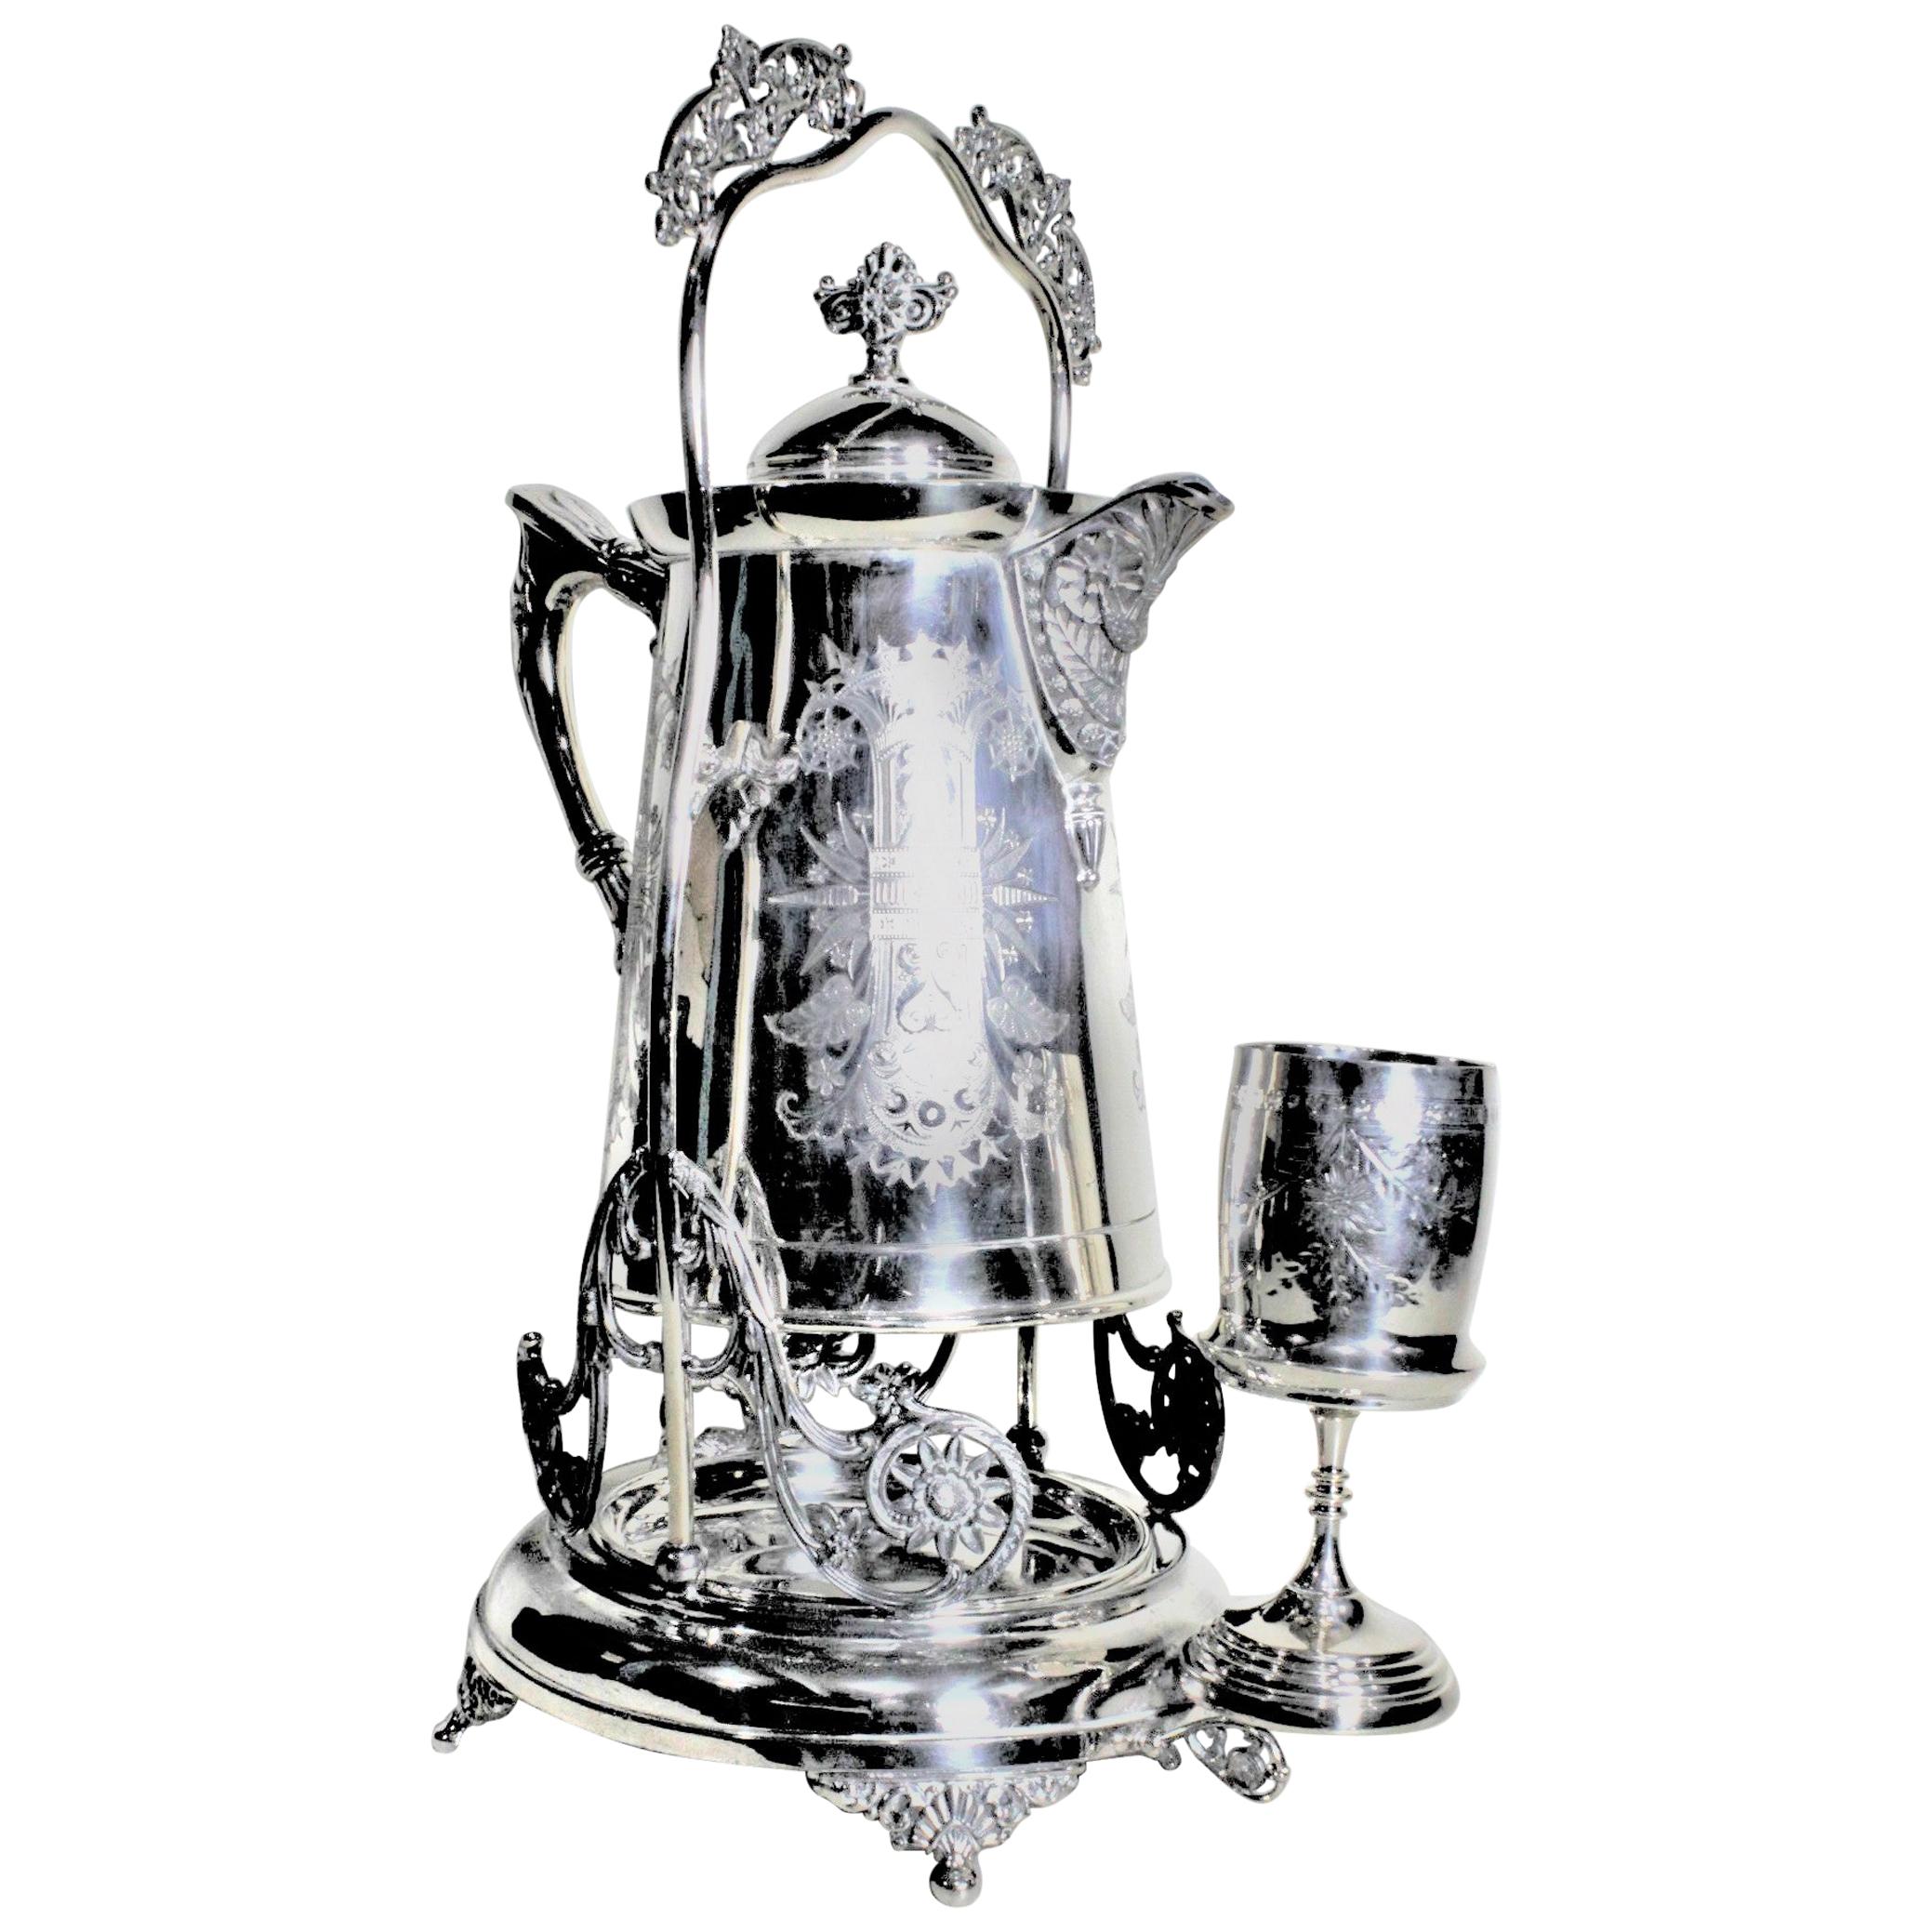 Antikes versilbertes Wasser- oder Zitronentopf-Set mit Glas und Ständer